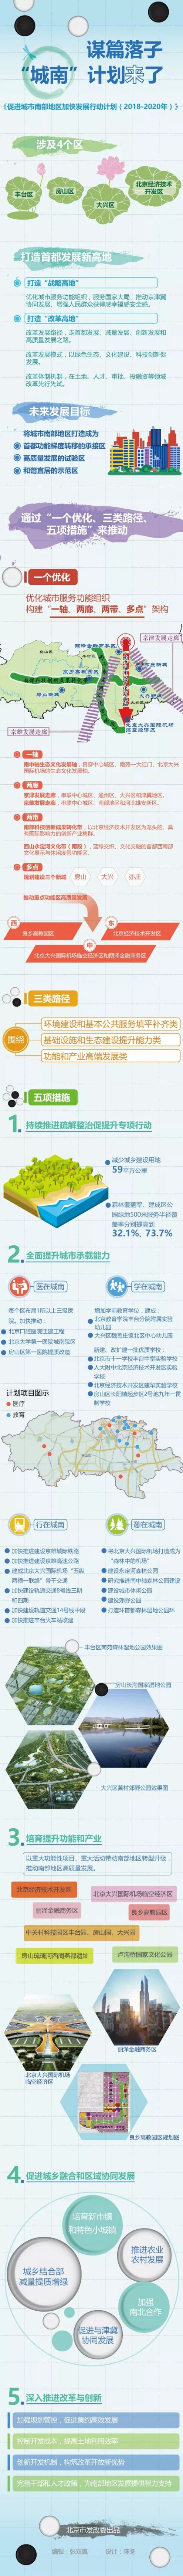 2018—2020年北京城南行动计划细则内容解读一览（图）